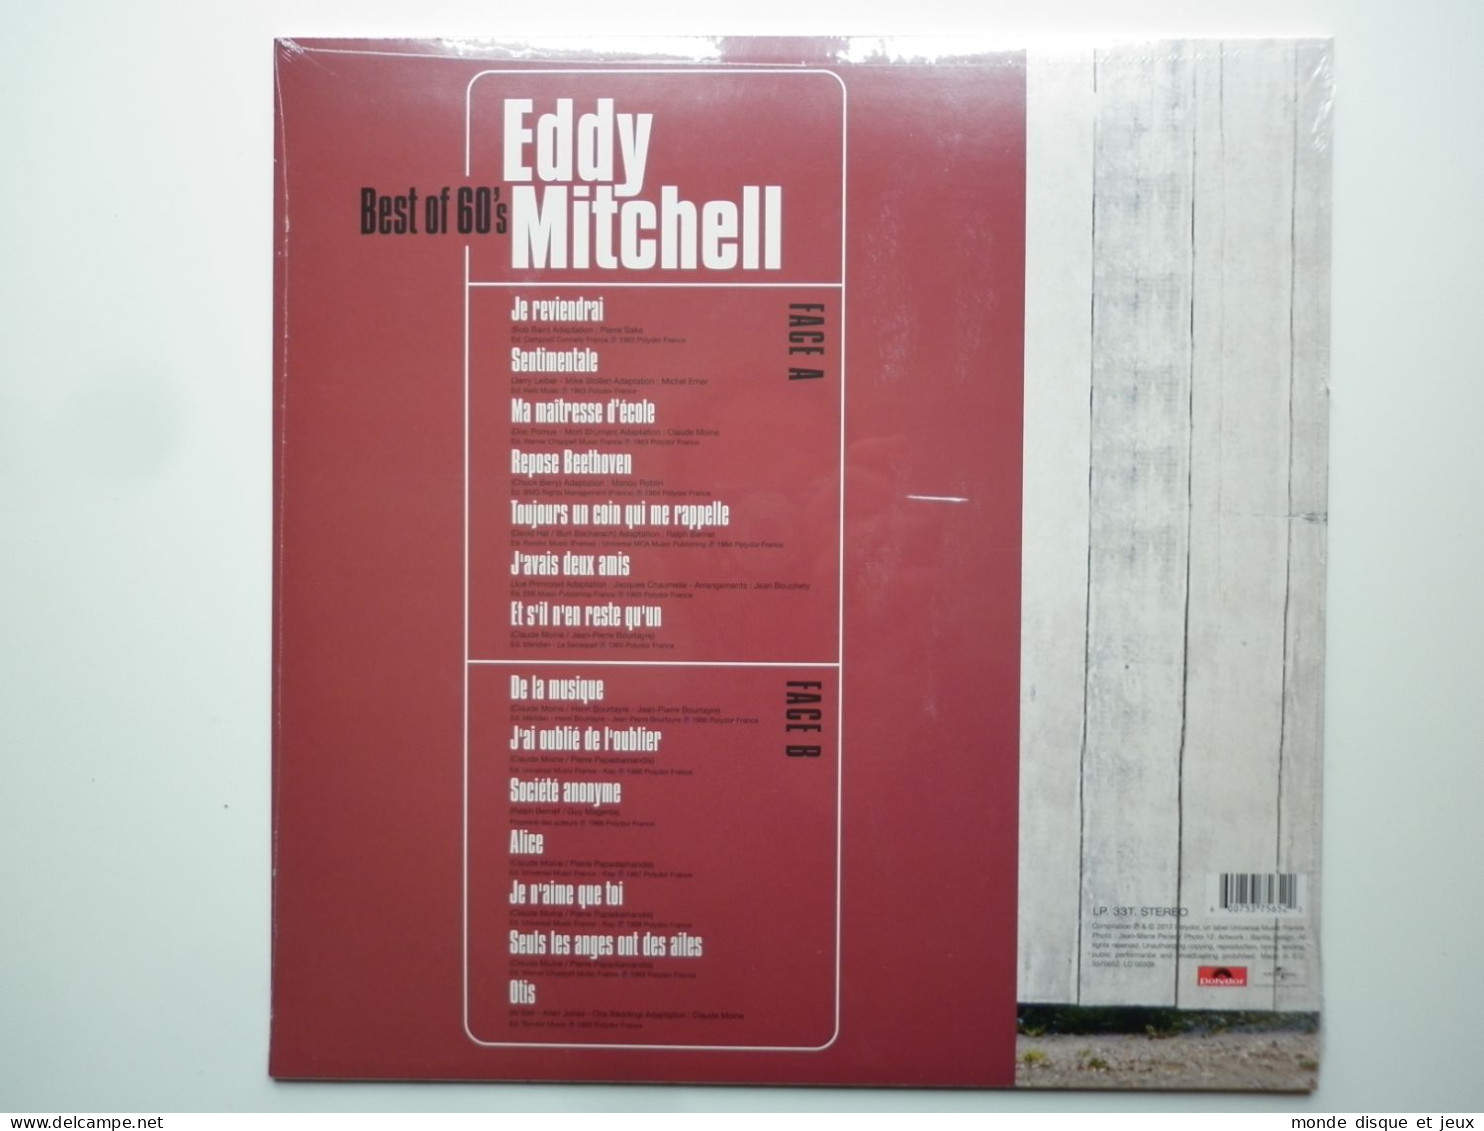 Eddy Mitchell Album 33Tours Vinyle Best Of 60's - Autres - Musique Française